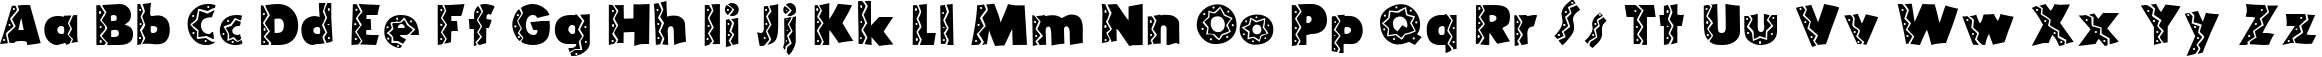 Пример написания английского алфавита шрифтом Tijuana Medium